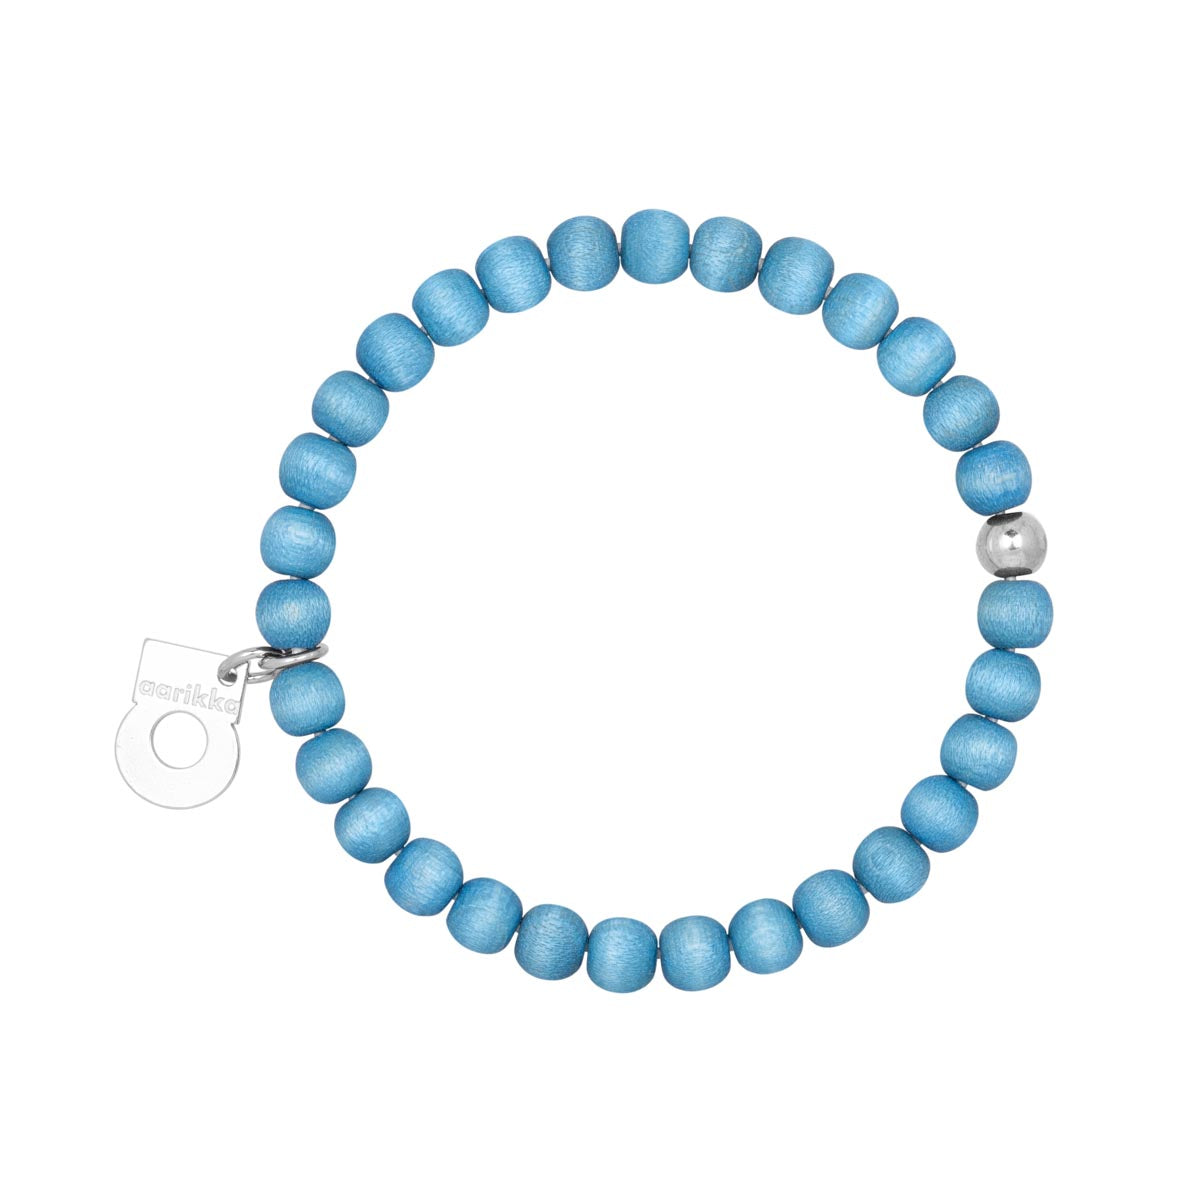 Herkkä bracelet, light blue